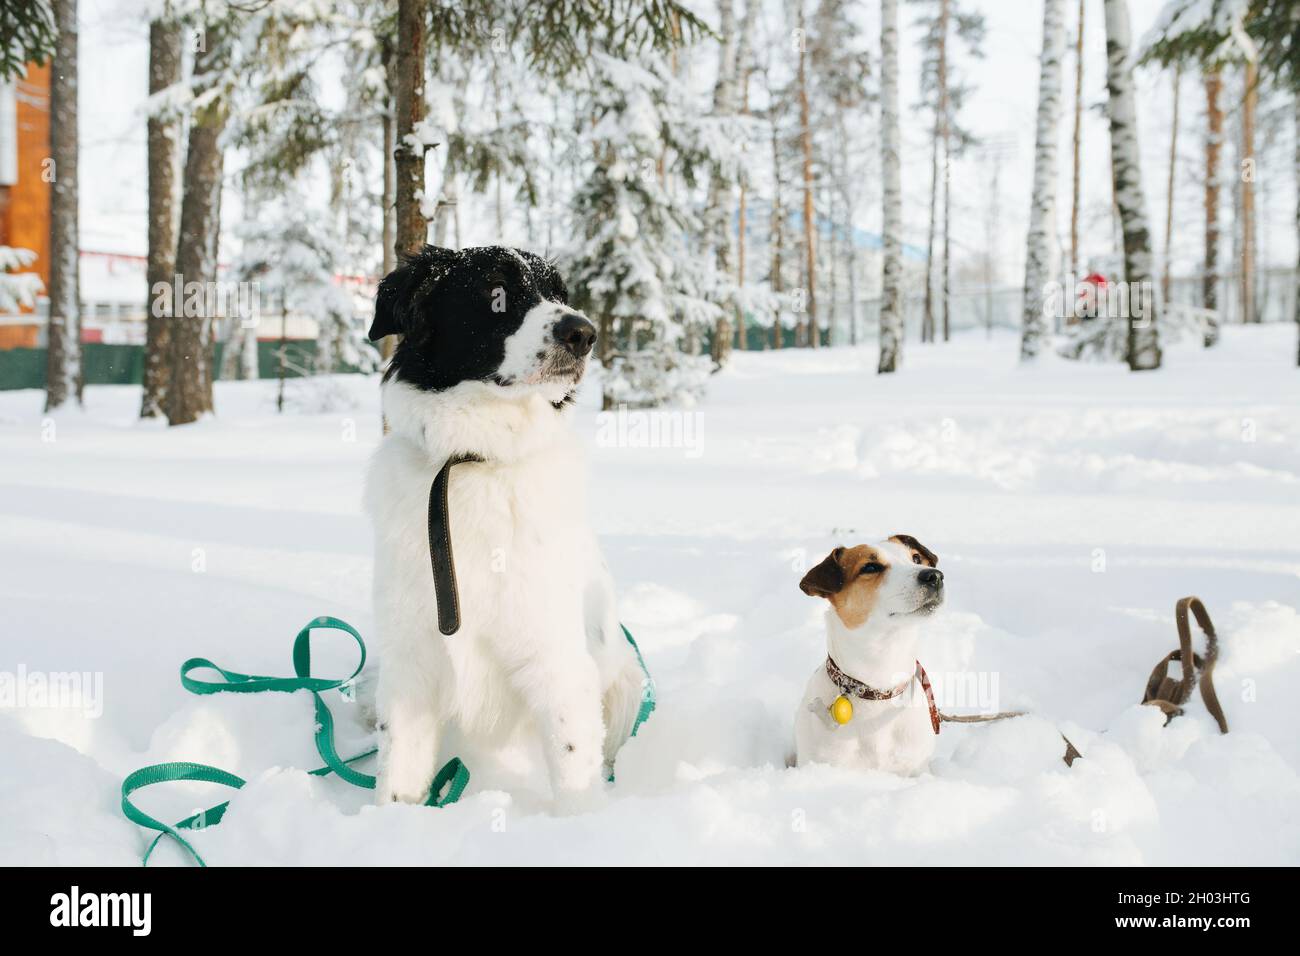 Les chiens drôles de curios assis à moitié burri dans une neige, les deux regardant dans la même direction.Clairsemez les arbres en arrière-plan.Neige dans l'air. Banque D'Images